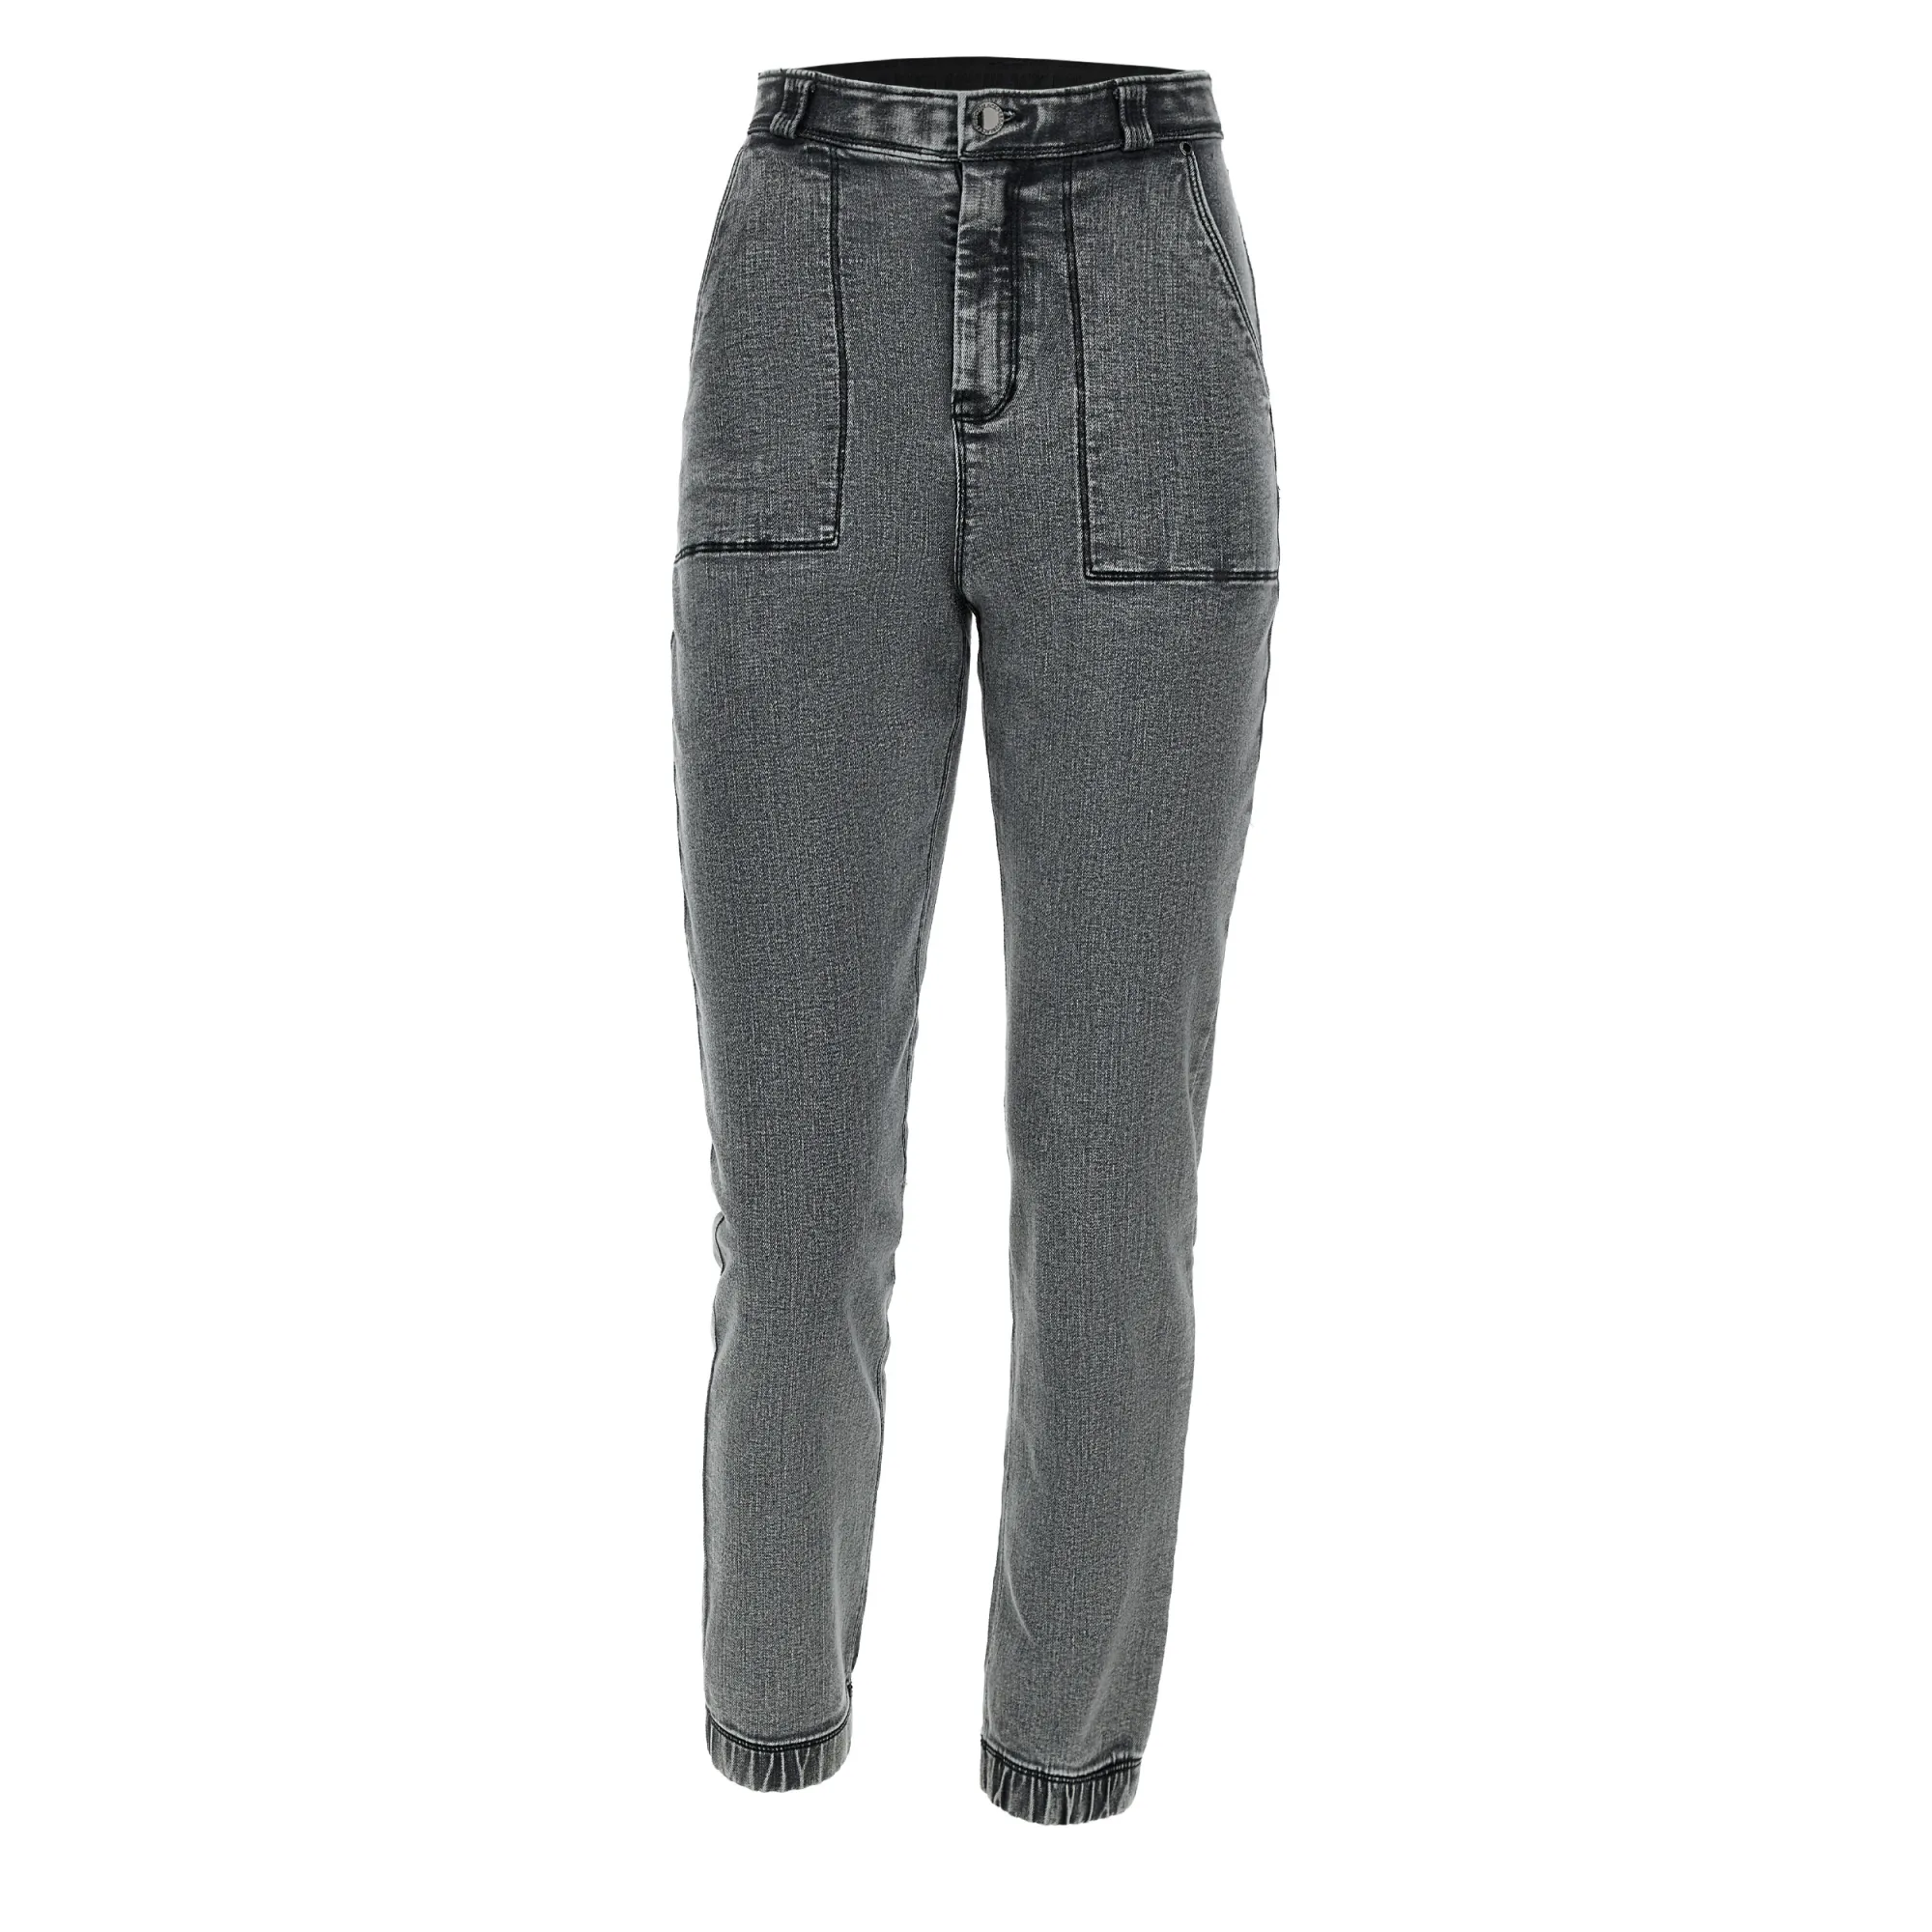 Freddy Fit Jeans - 7/8 High Waist Straight - Washed Grey - Black Seam - J3N